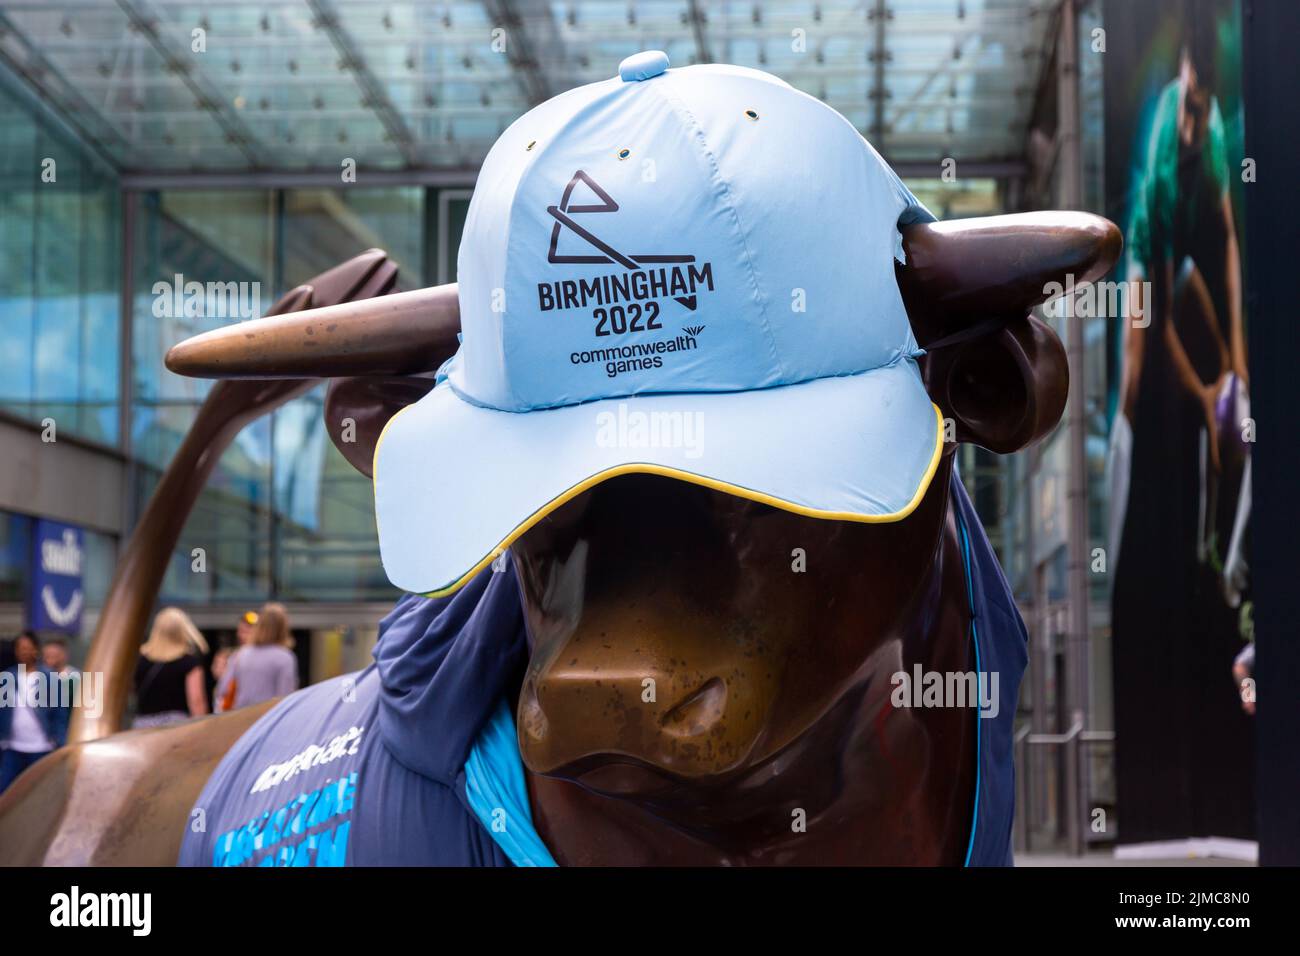 La estatua de la plaza de toros con una gorra durante los Juegos de la Commonwealth de Birmingham en 2022, Birmingham Reino Unido Foto de stock